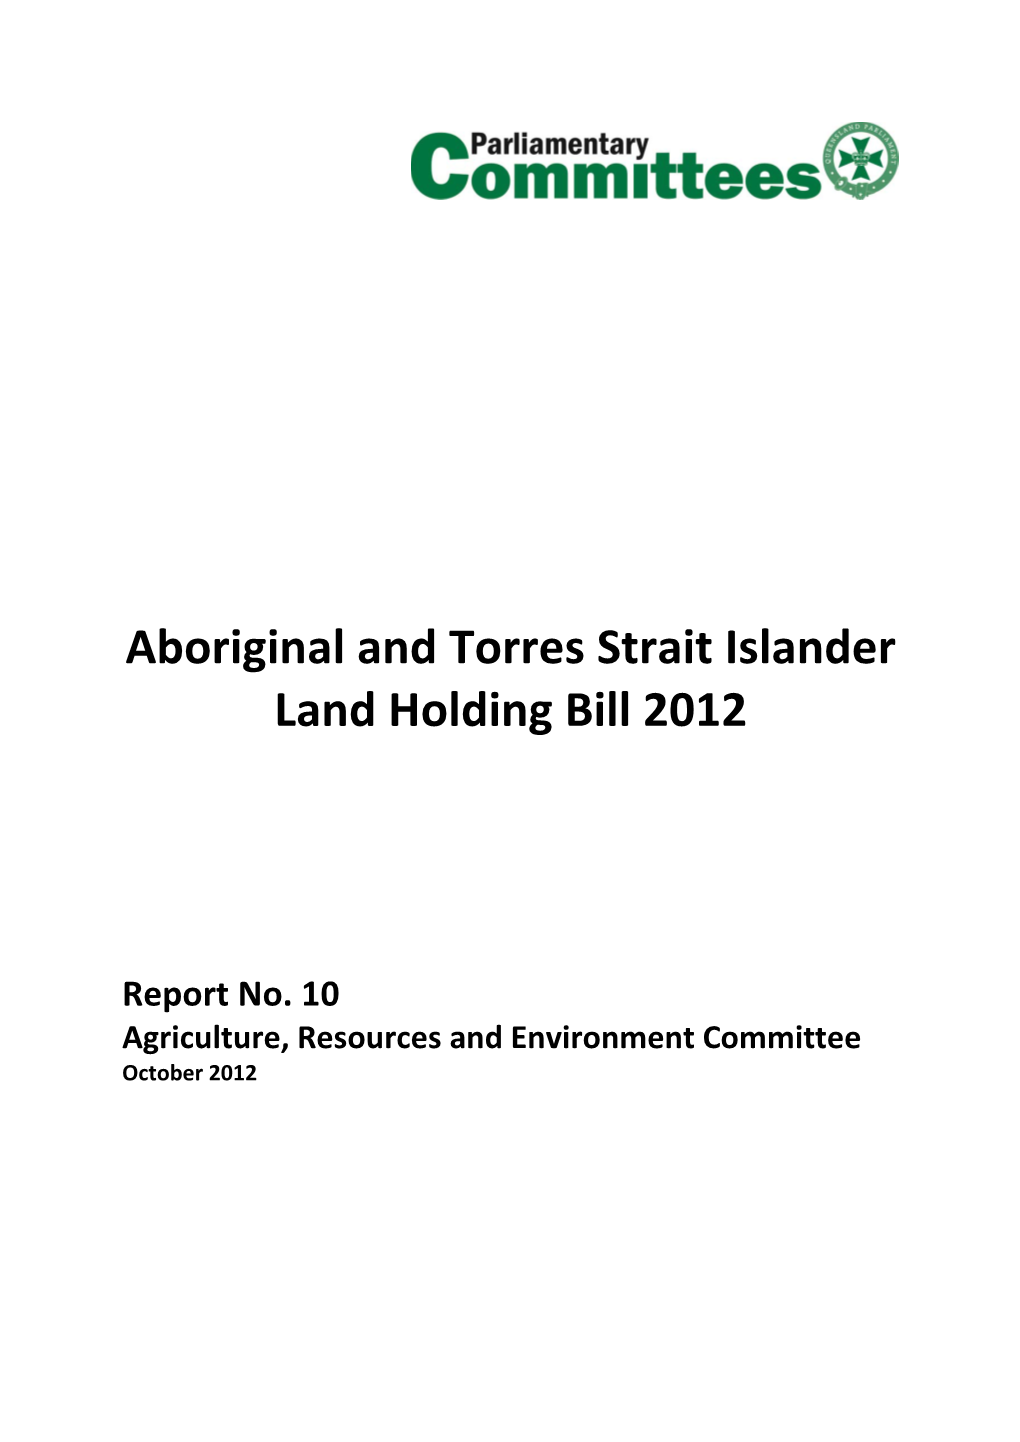 Aboriginal and Torres Strait Islander Land Holding Bill 2012